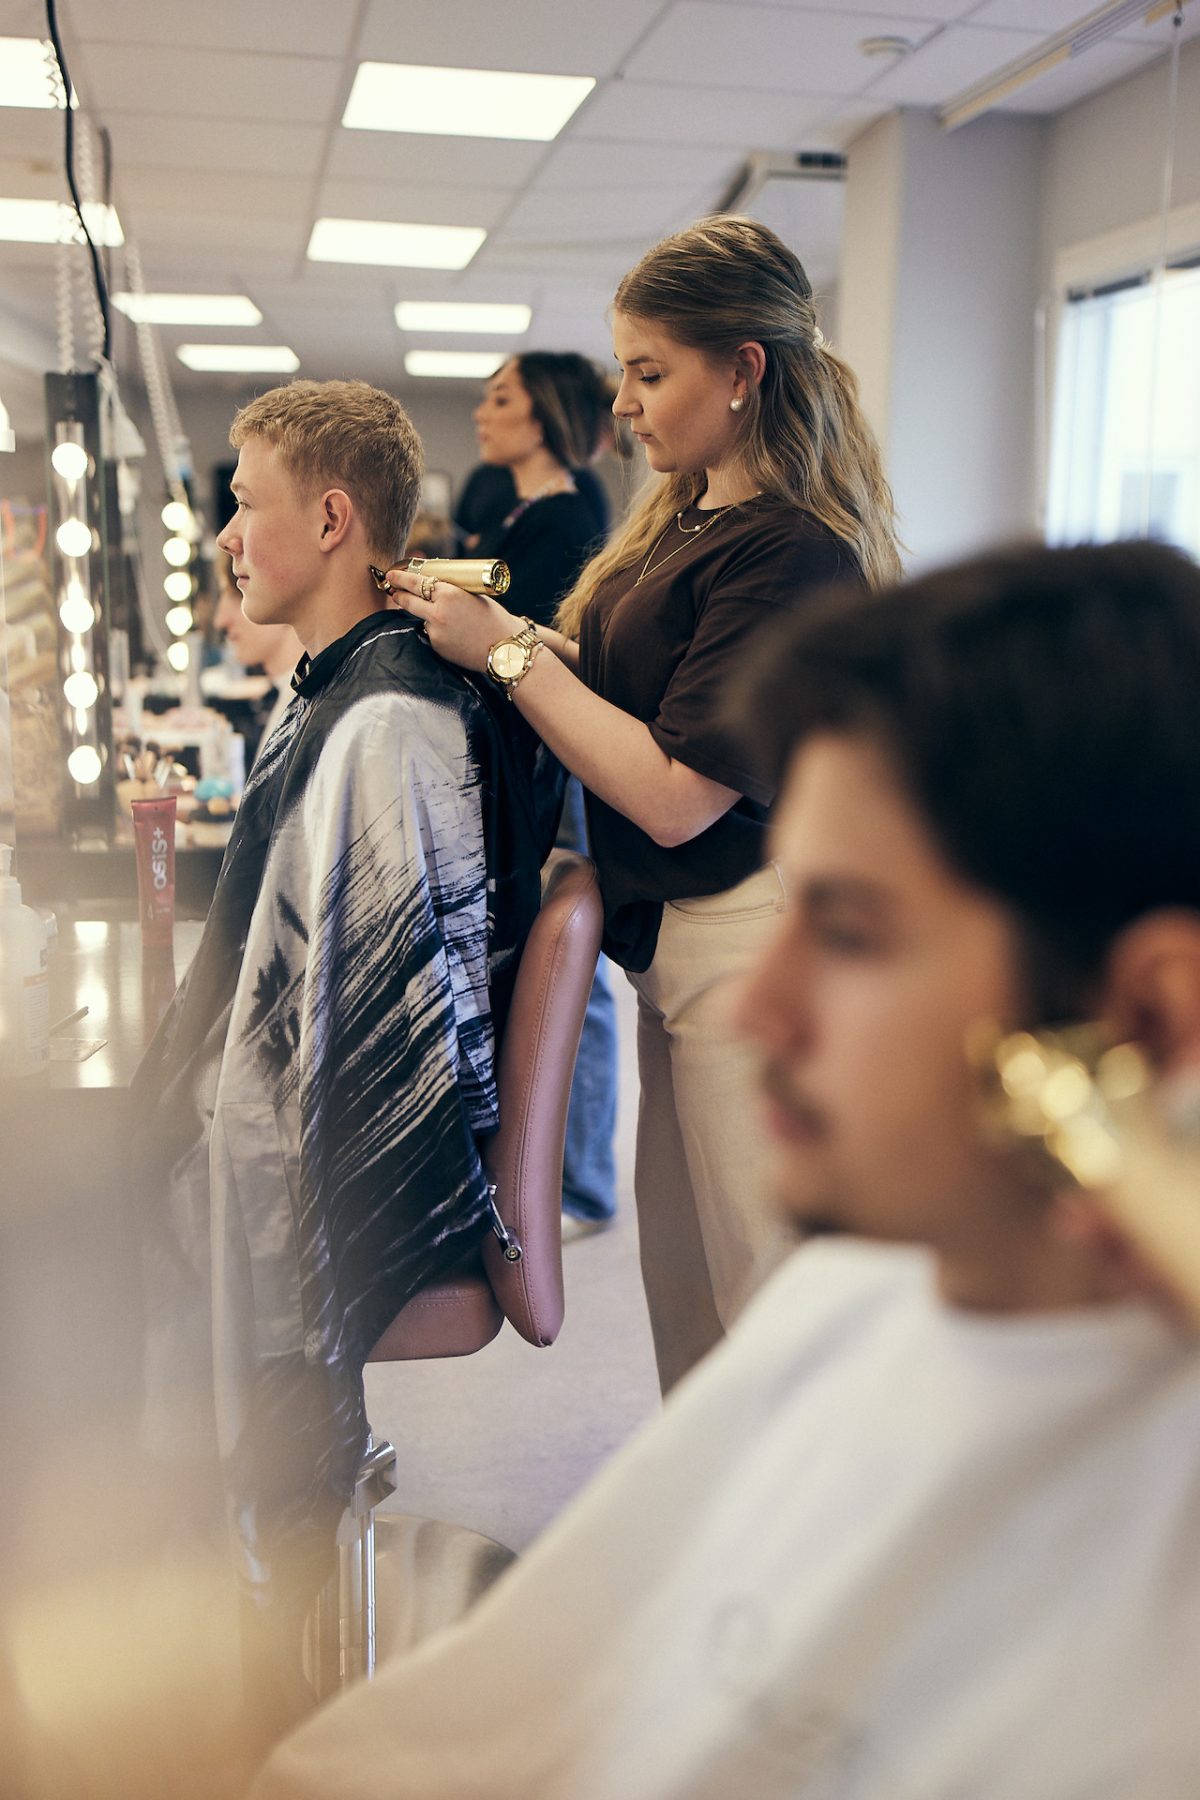 Elever trimmar hår i en salong